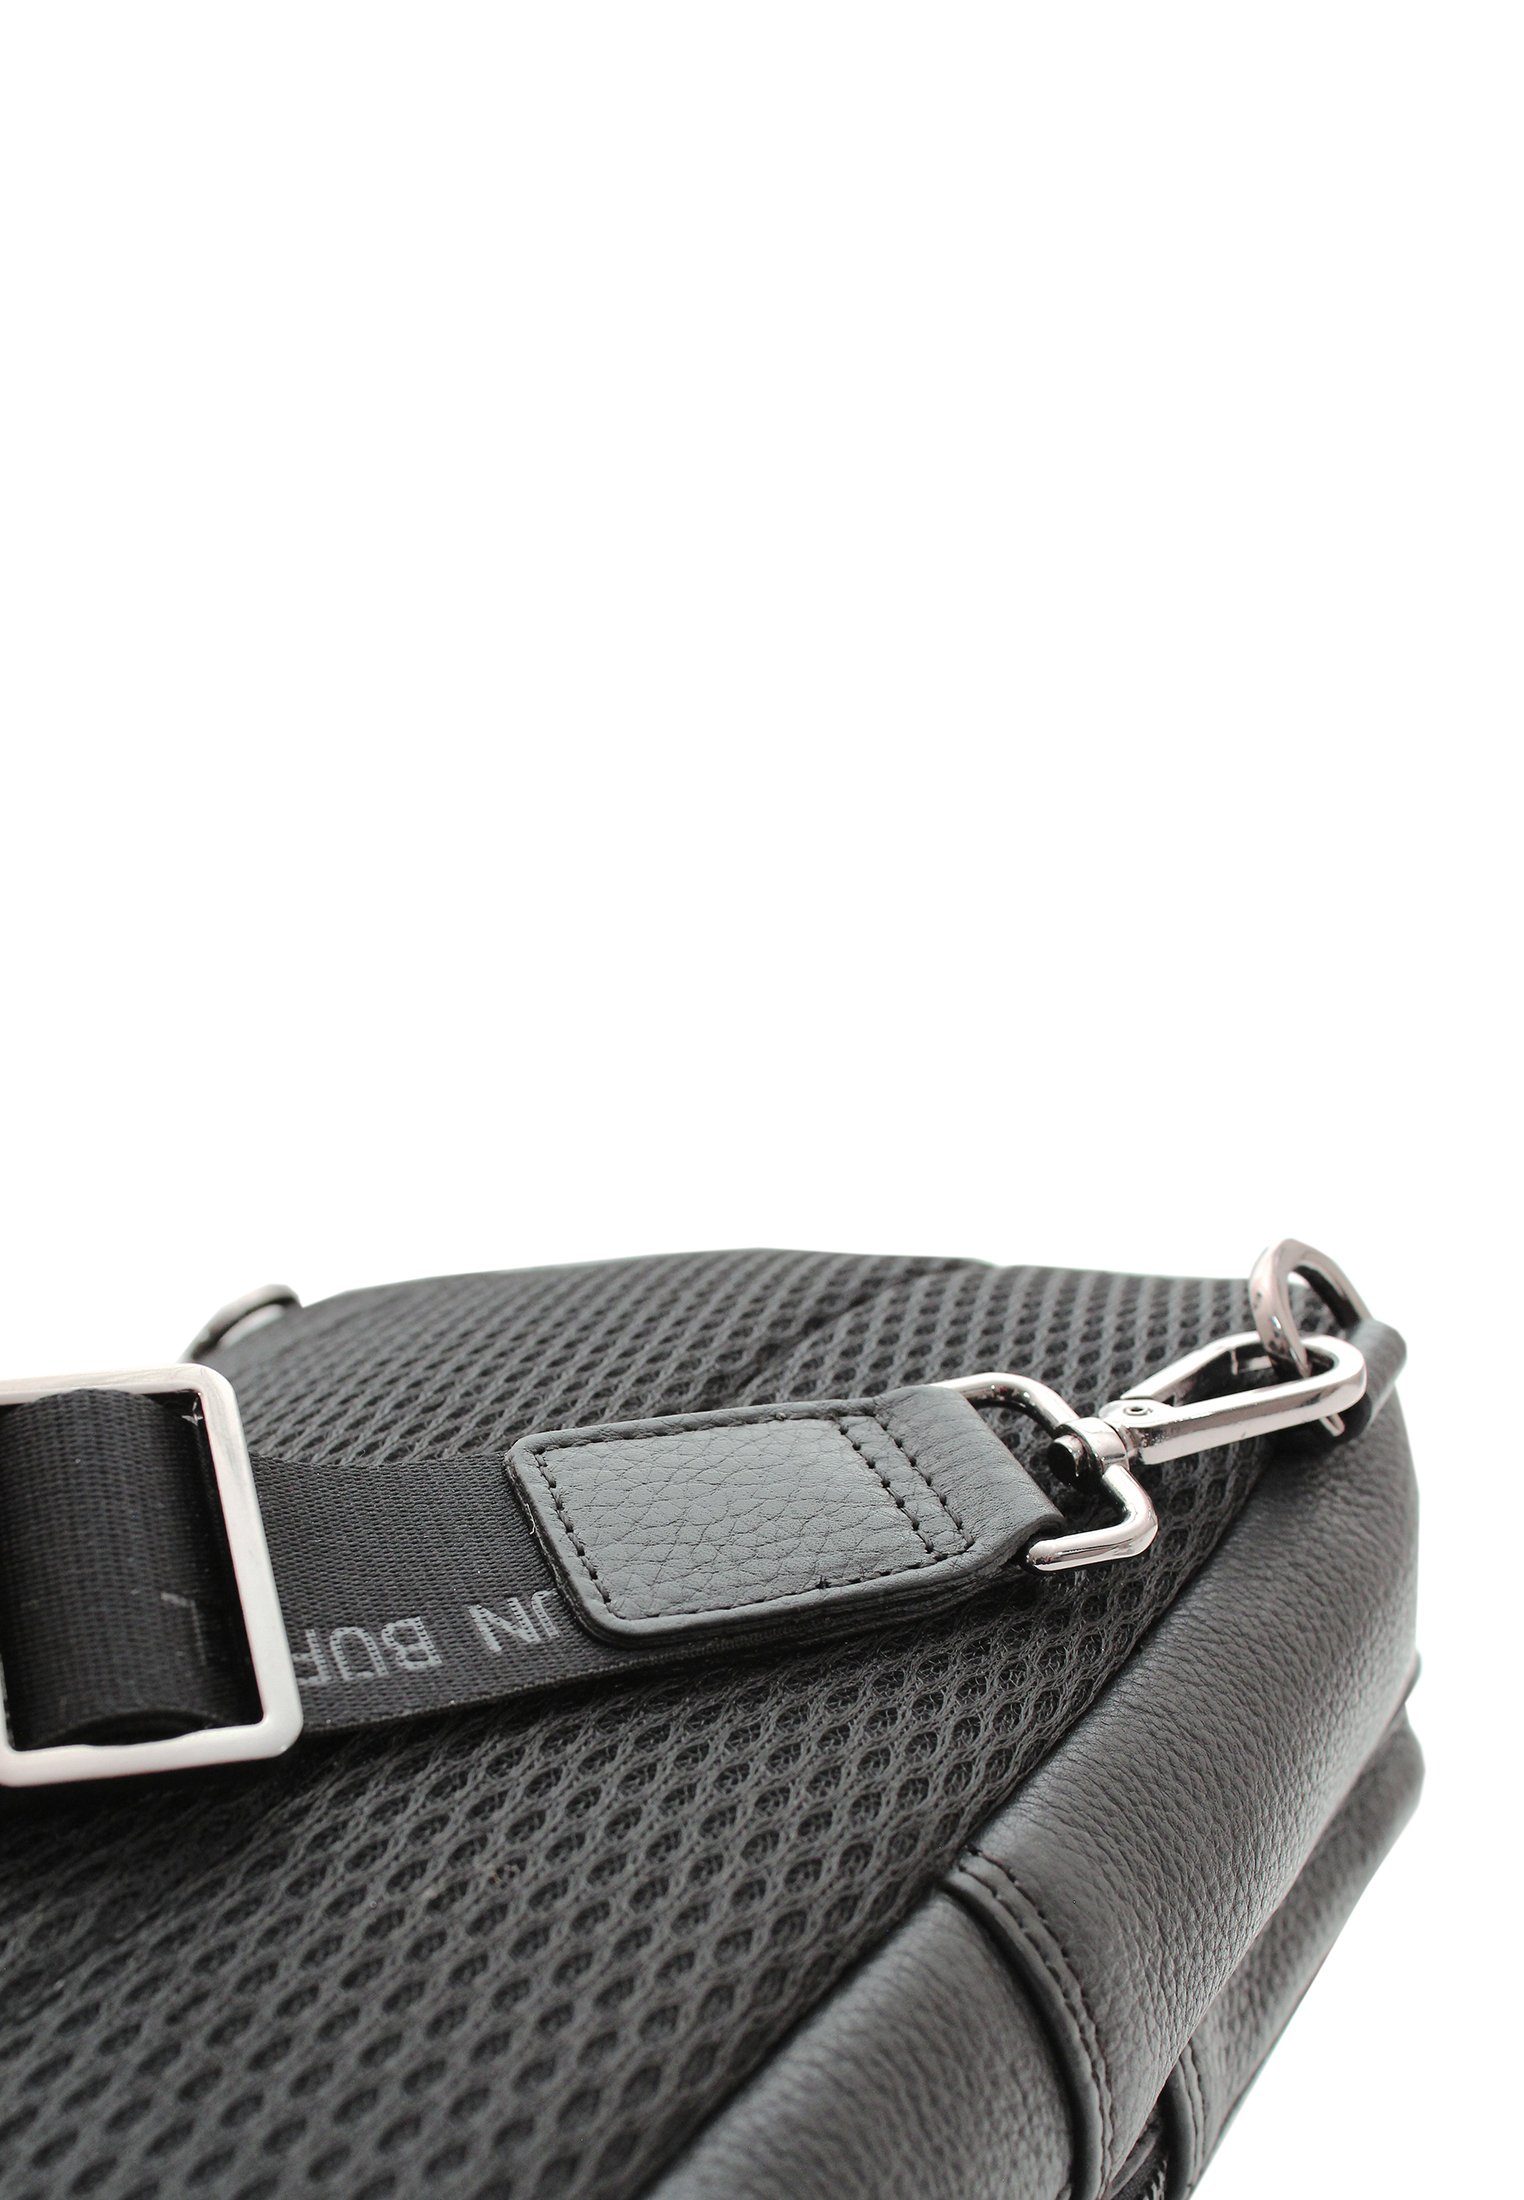 Umhängetasche und schwarz, Umhängegurt Braun mit Büffel Sling NOVARA Tabletfach Bag